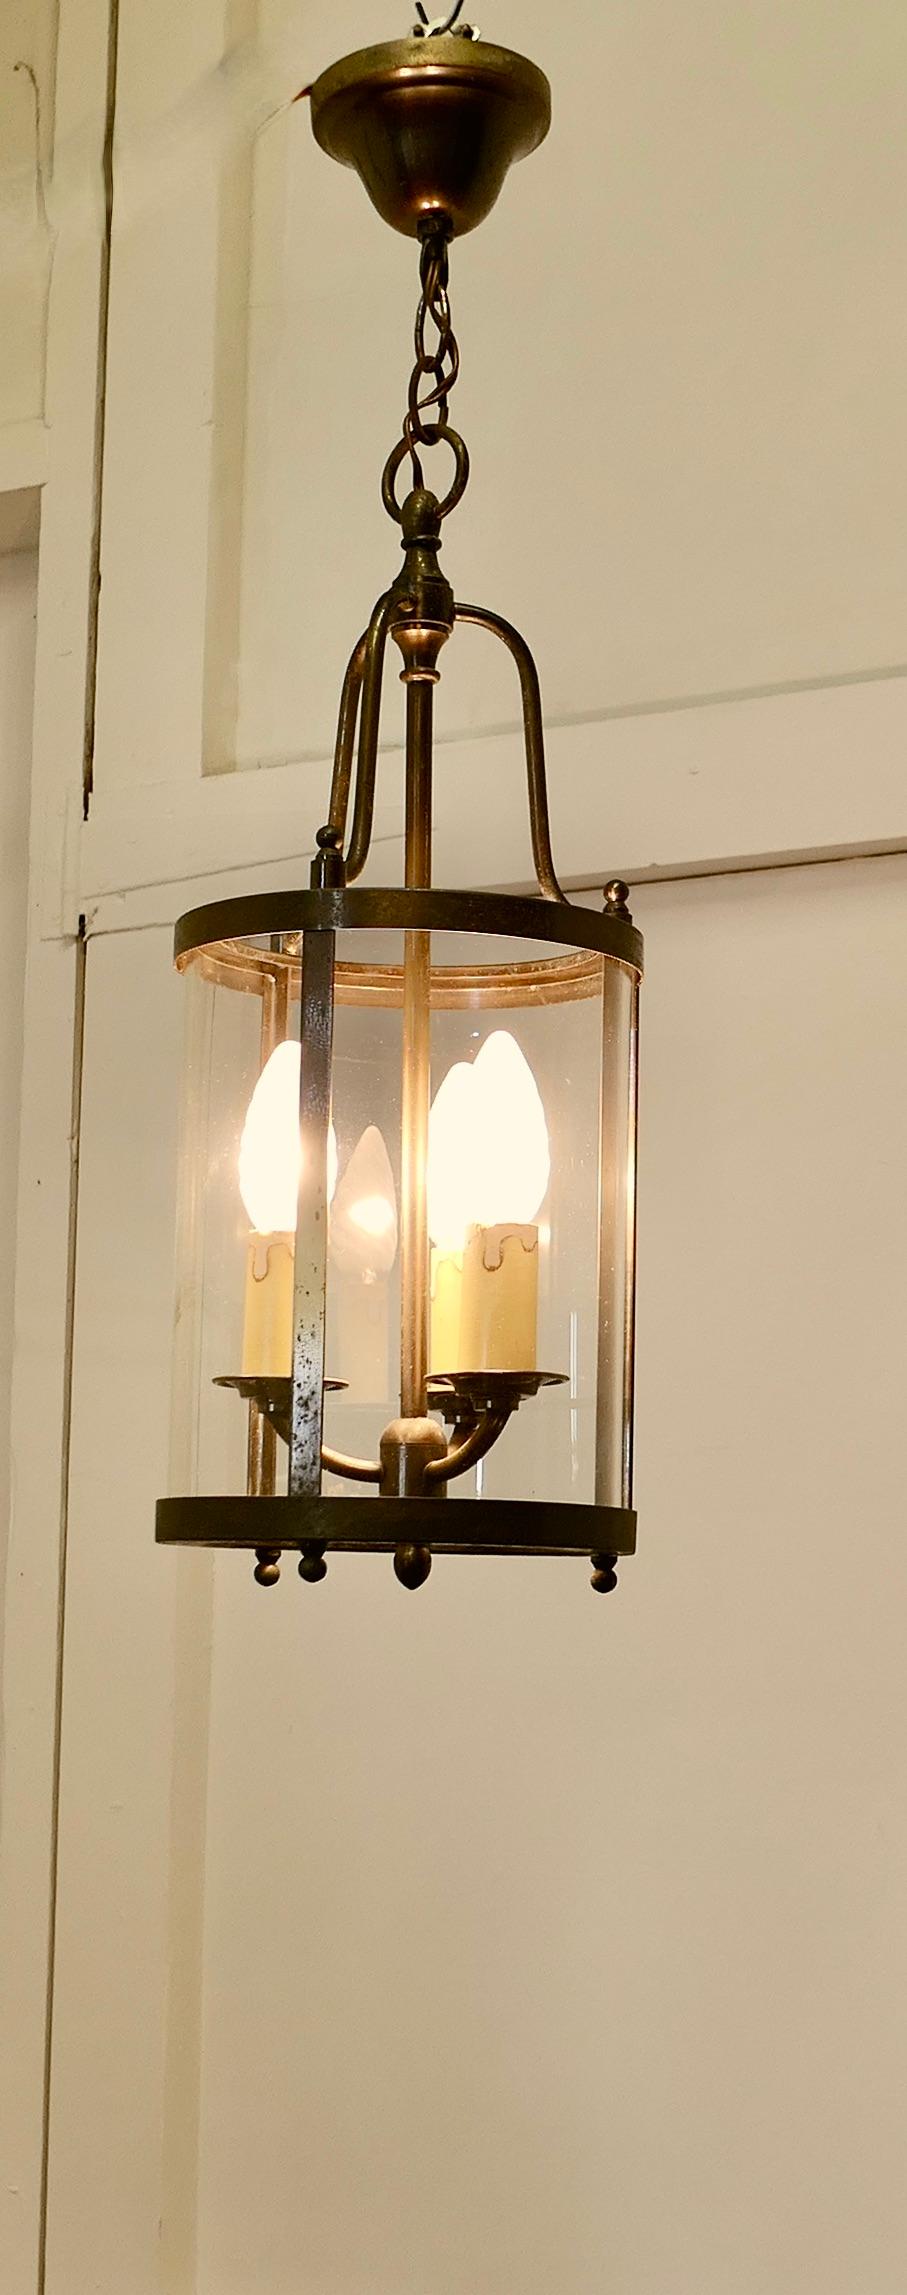 Lanterne française en laiton et verre Lights

Cette lanterne traditionnelle est dotée d'un abat-jour cylindrique en verre et d'une double ampoule à l'intérieur. Elle est suspendue par une chaîne à une rosace de plafond en laiton.
La lanterne donne